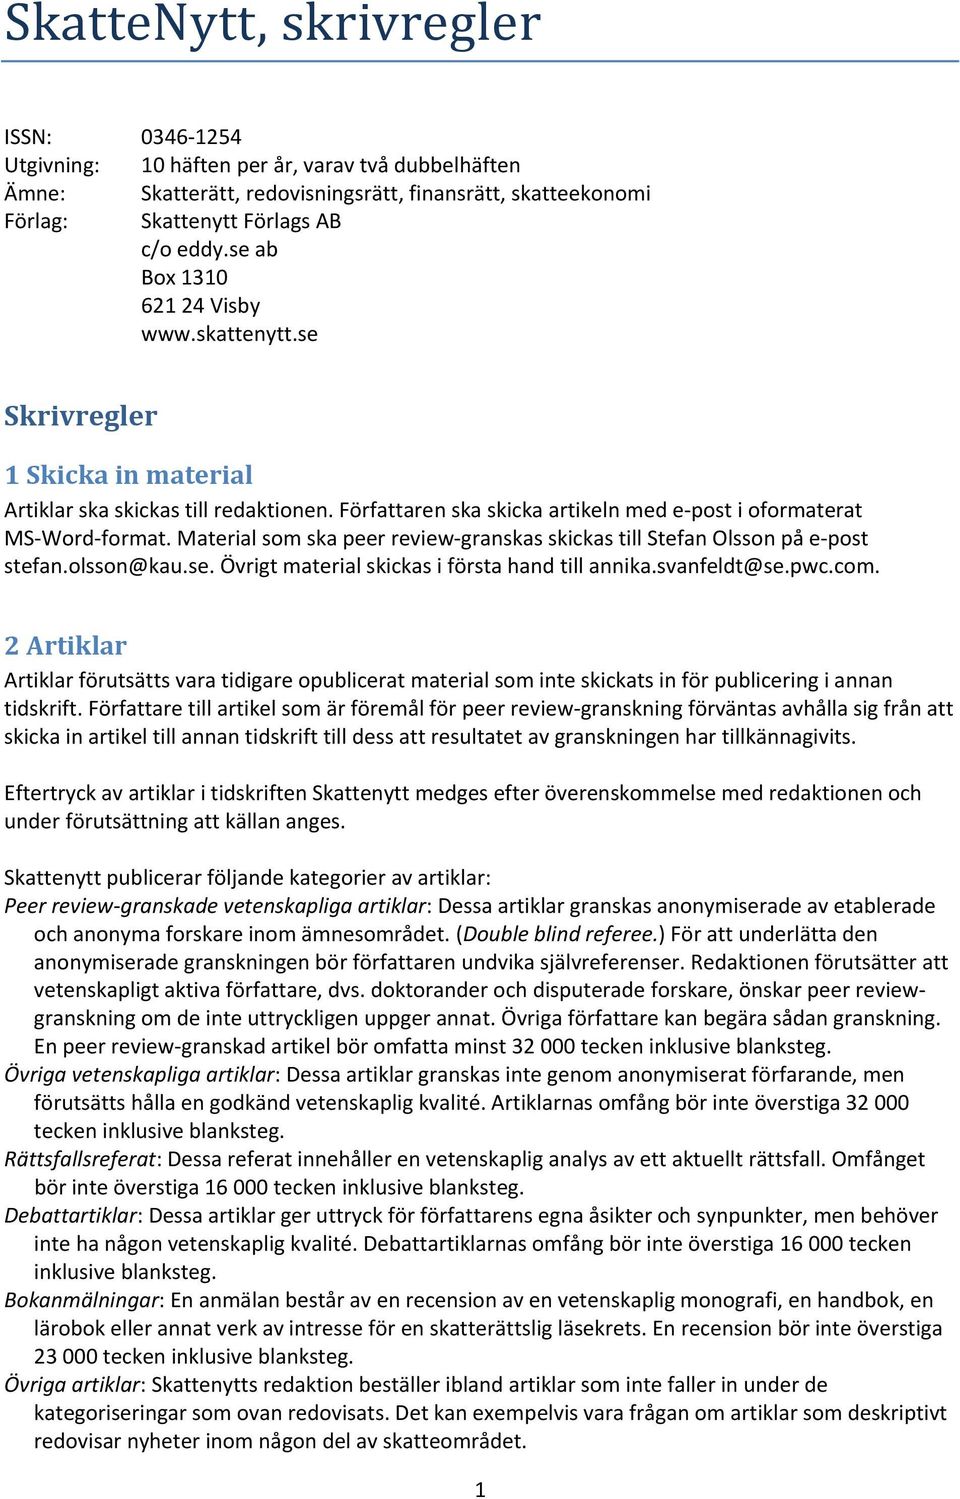 Material som ska peer review-granskas skickas till Stefan Olsson på e-post stefan.olsson@kau.se. Övrigt material skickas i första hand till annika.svanfeldt@se.pwc.com.